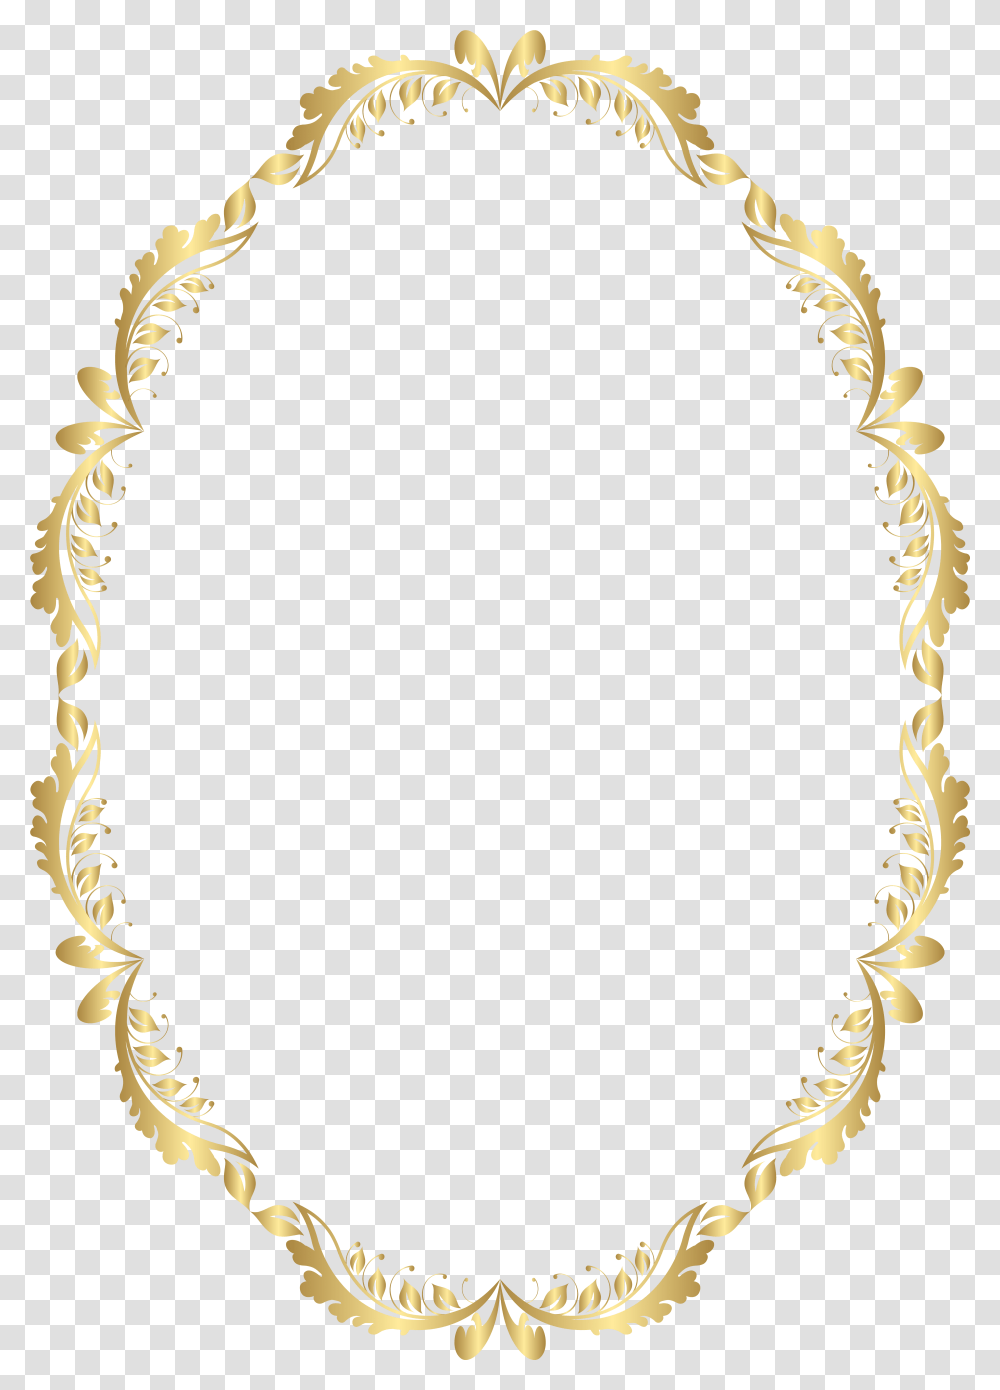 Background Gold Oval Frame Transparent Png